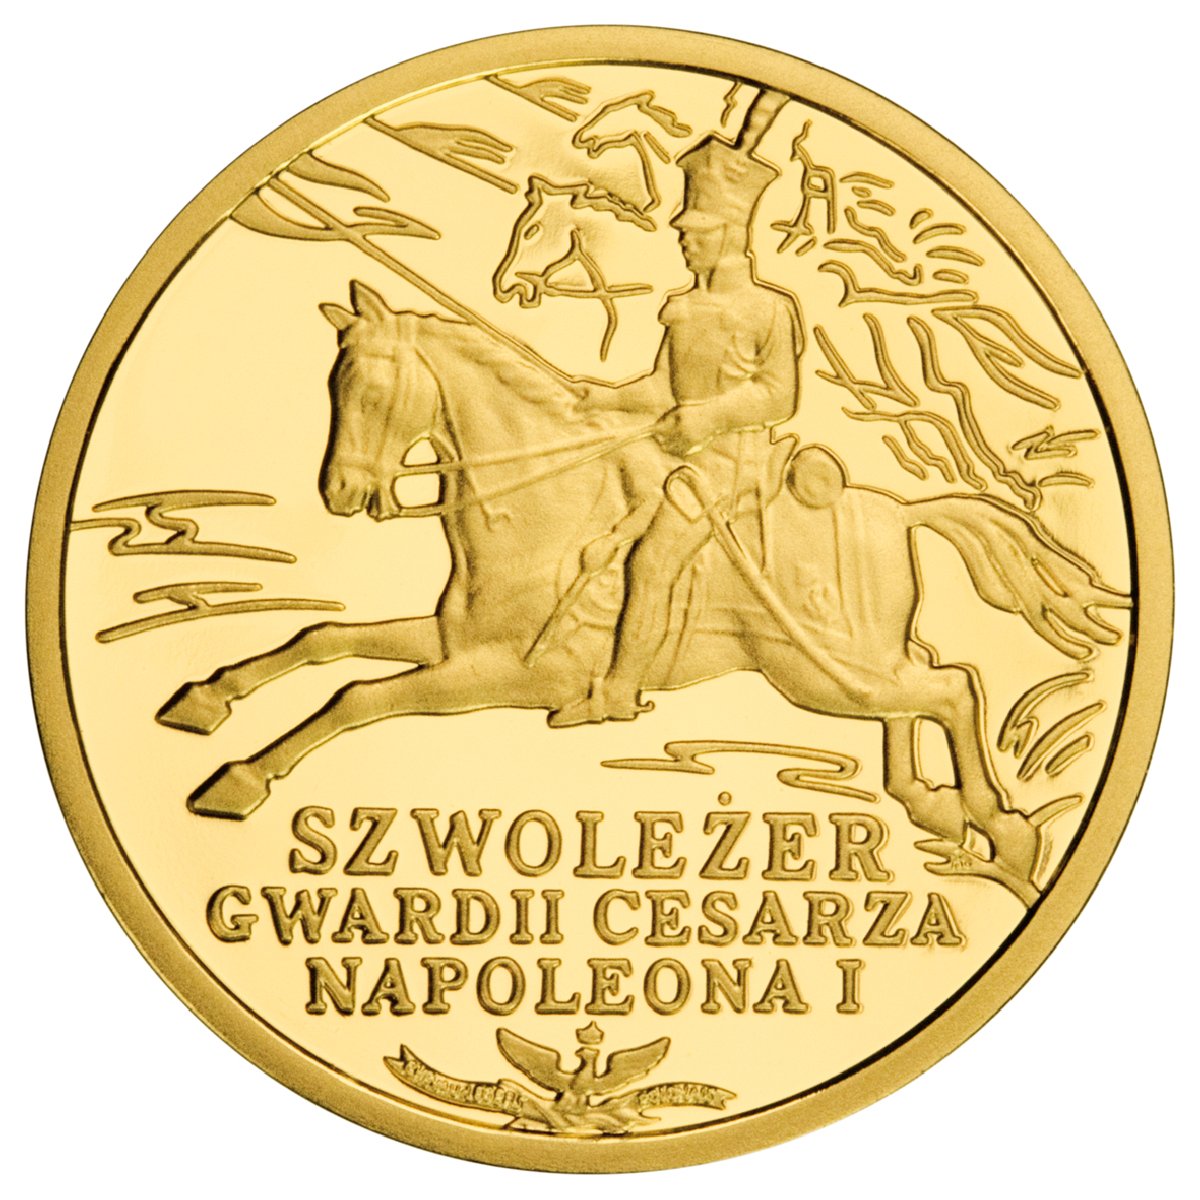 200zl-szwolezer-gwardii-cesarza-napoleona-i-rewers-monety